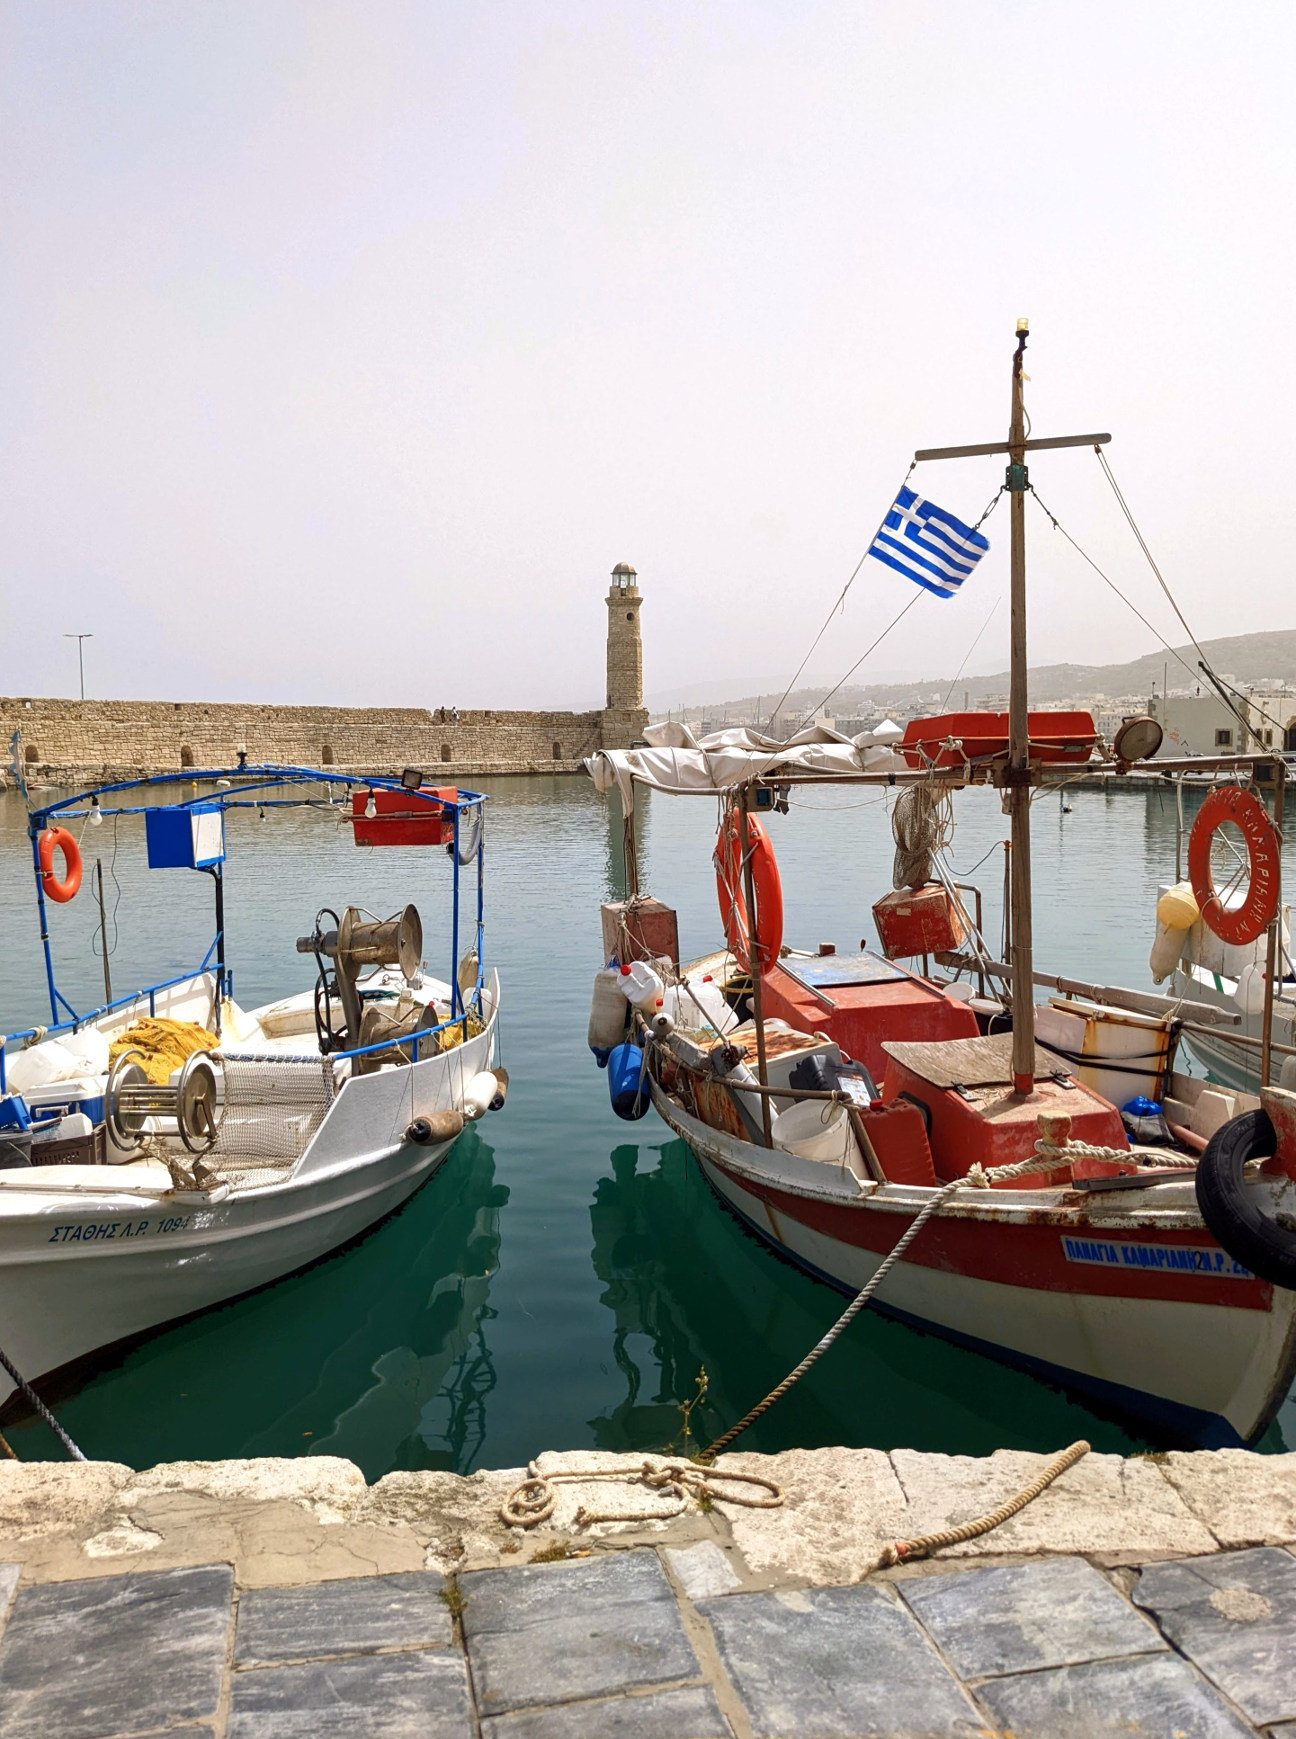 Rethymno Hafen